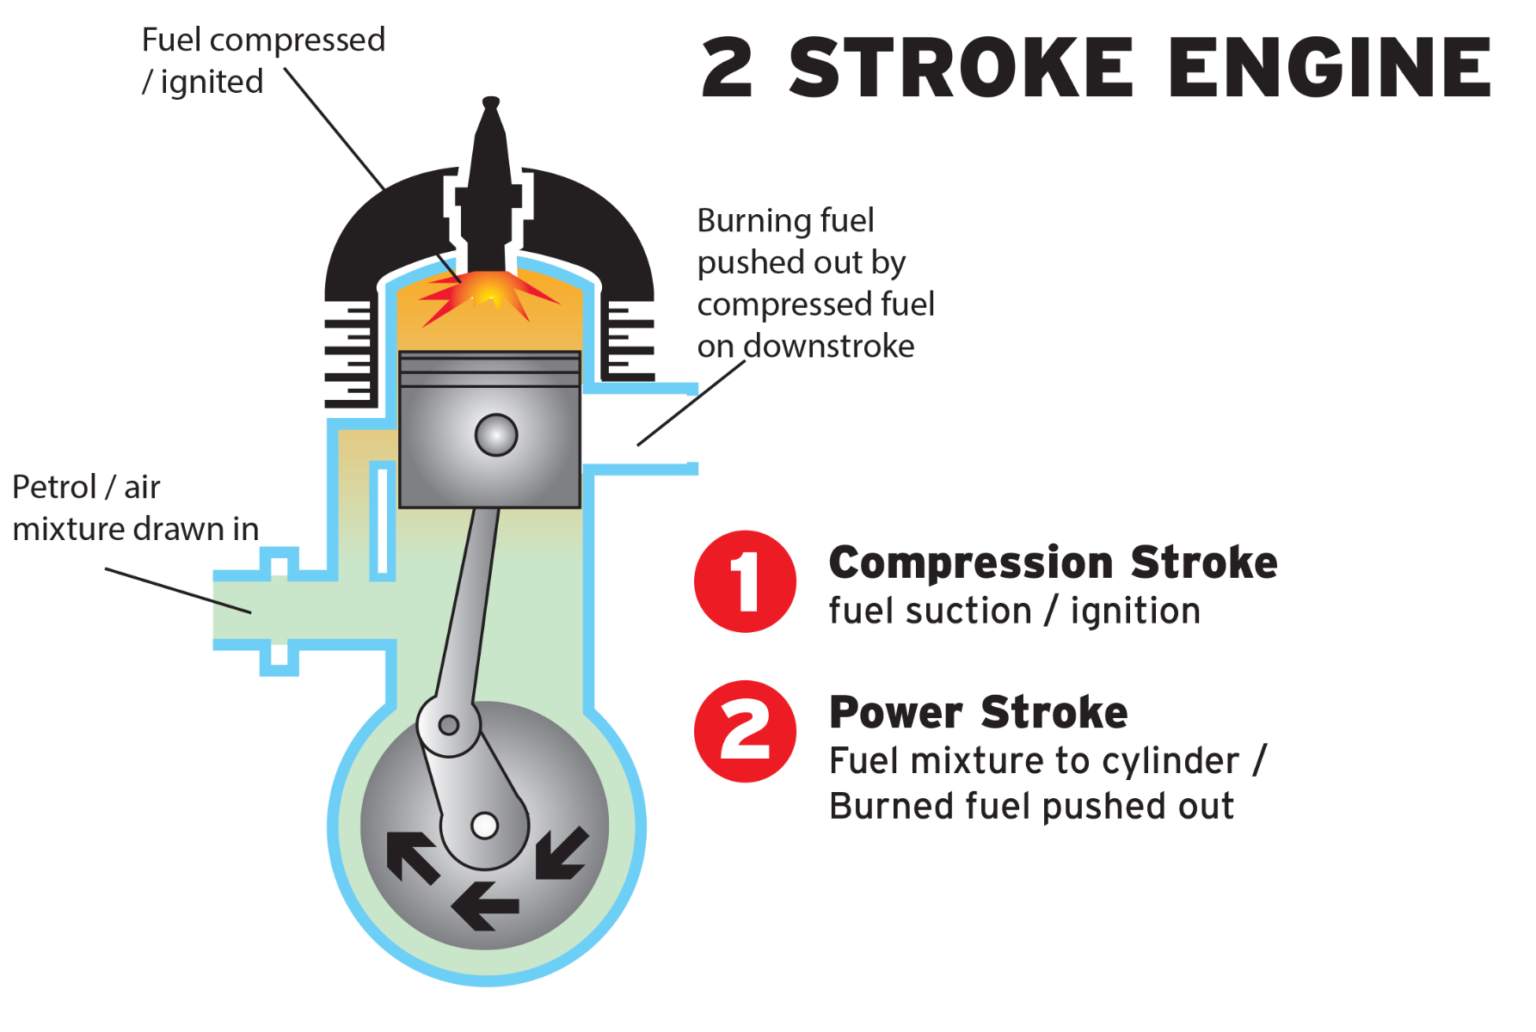 Stroke engine. 2 Stroke. Two stroke Diesel engine. 4 Stroke engine.